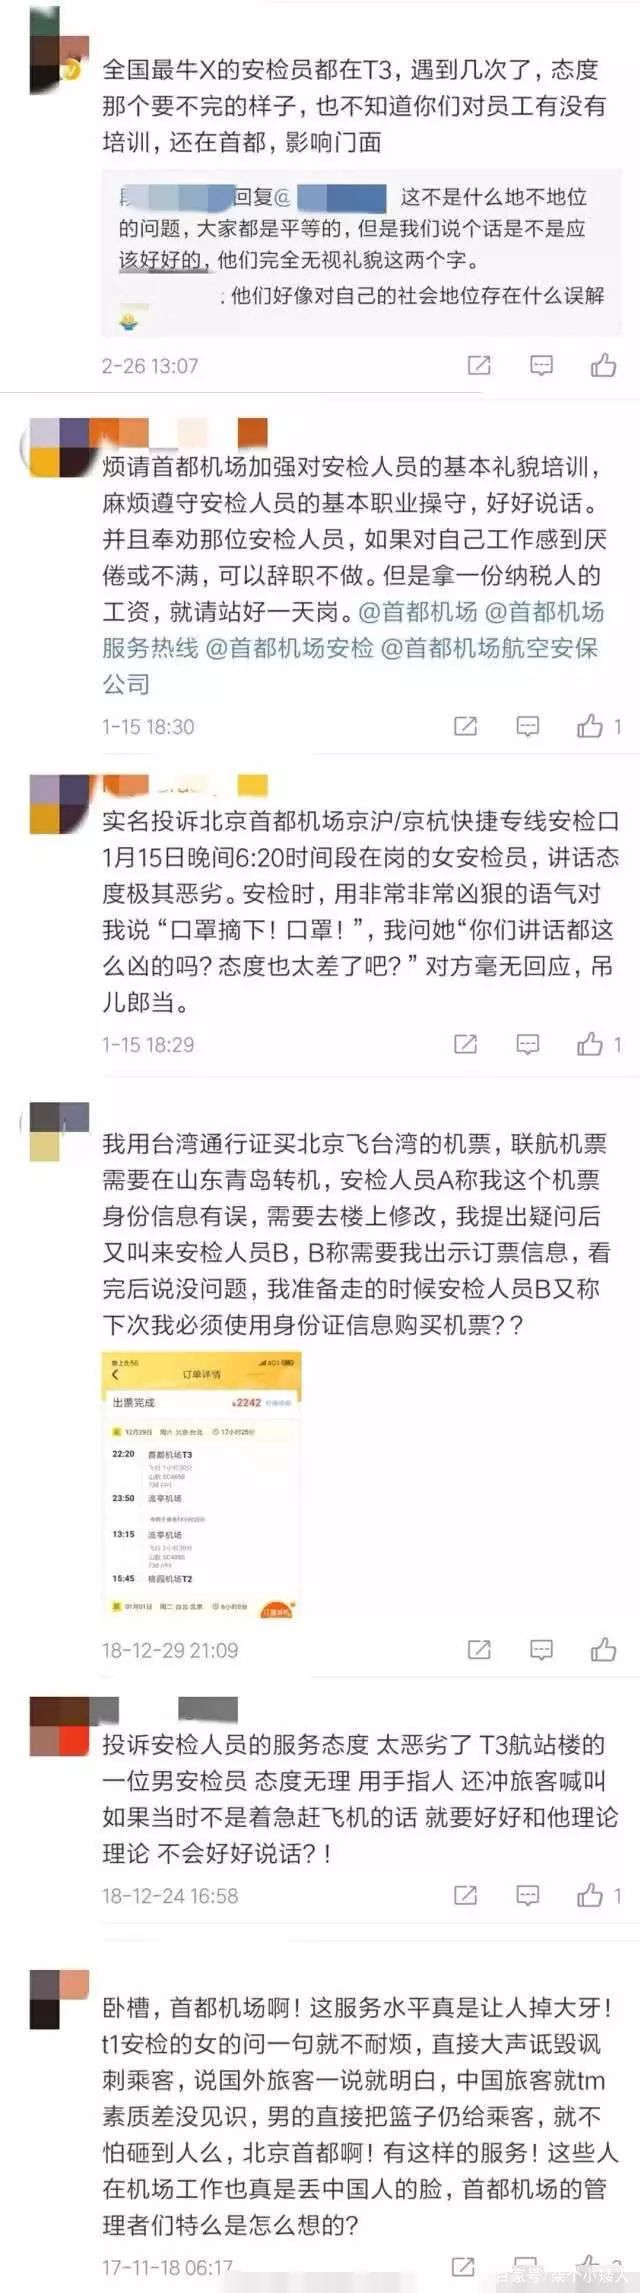 曾轶可工作将暂停原因是首都机场被关“小黑屋”搞网络暴力让中国人很生气